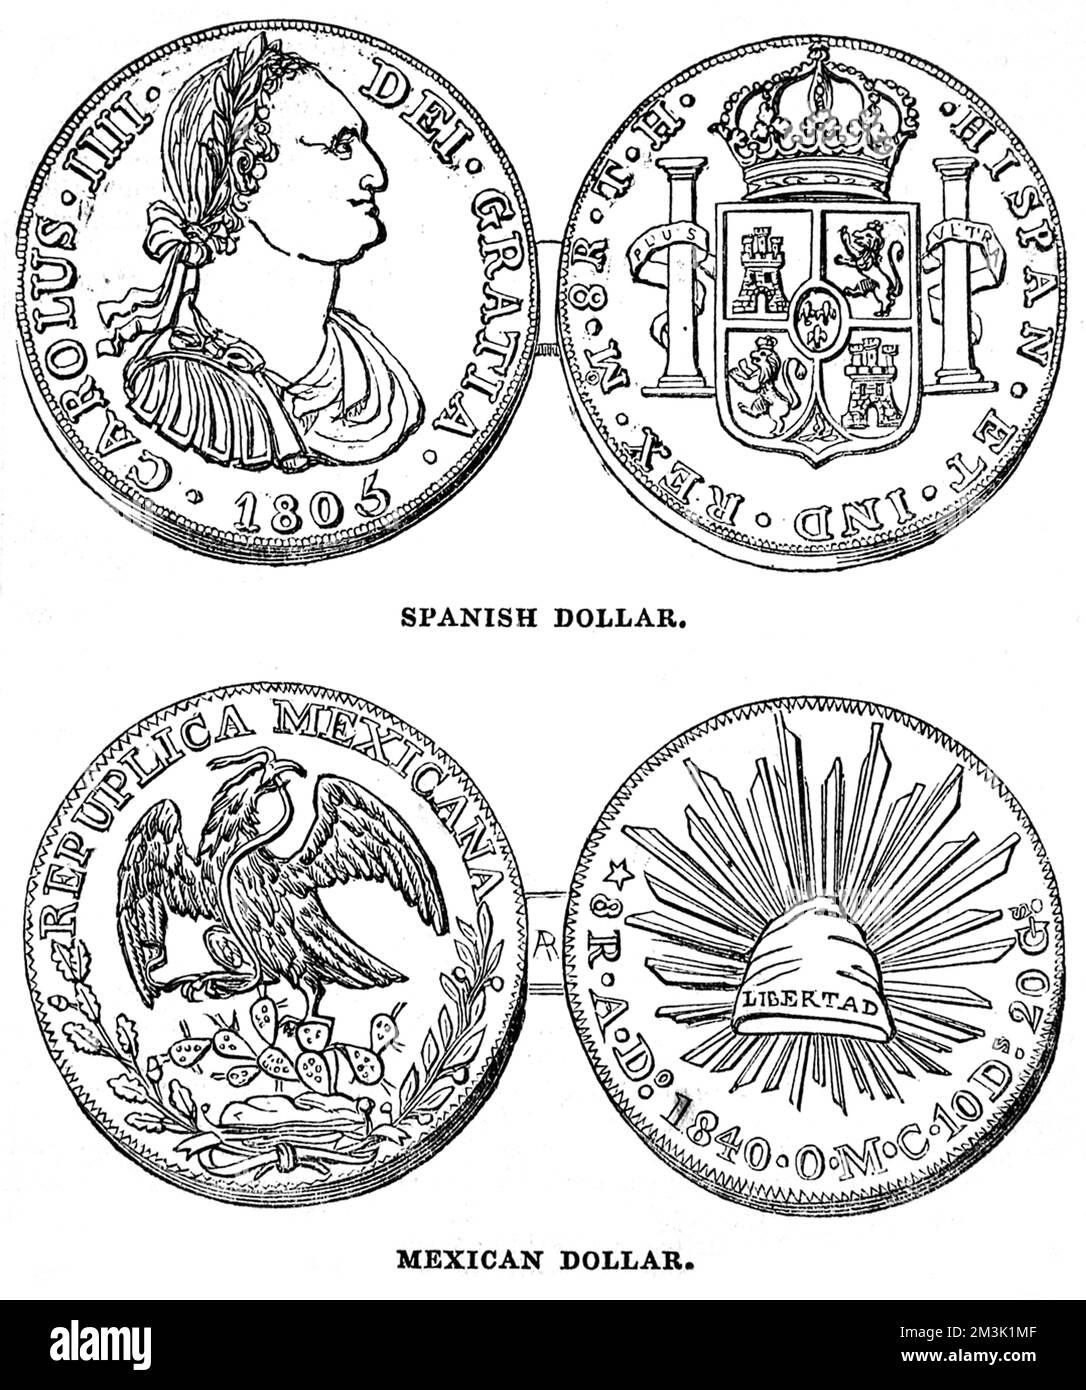 Moneta contenuta nelle volte della Banca d'Inghilterra. All'inizio del diciannovesimo centuro di dollari spagnoli e messicani, lo spagnolo è conosciuto come il dollaro della colonna di Carlo IV, il messicano è conosciuto come il dollaro dell'aquila. 1845 Foto Stock